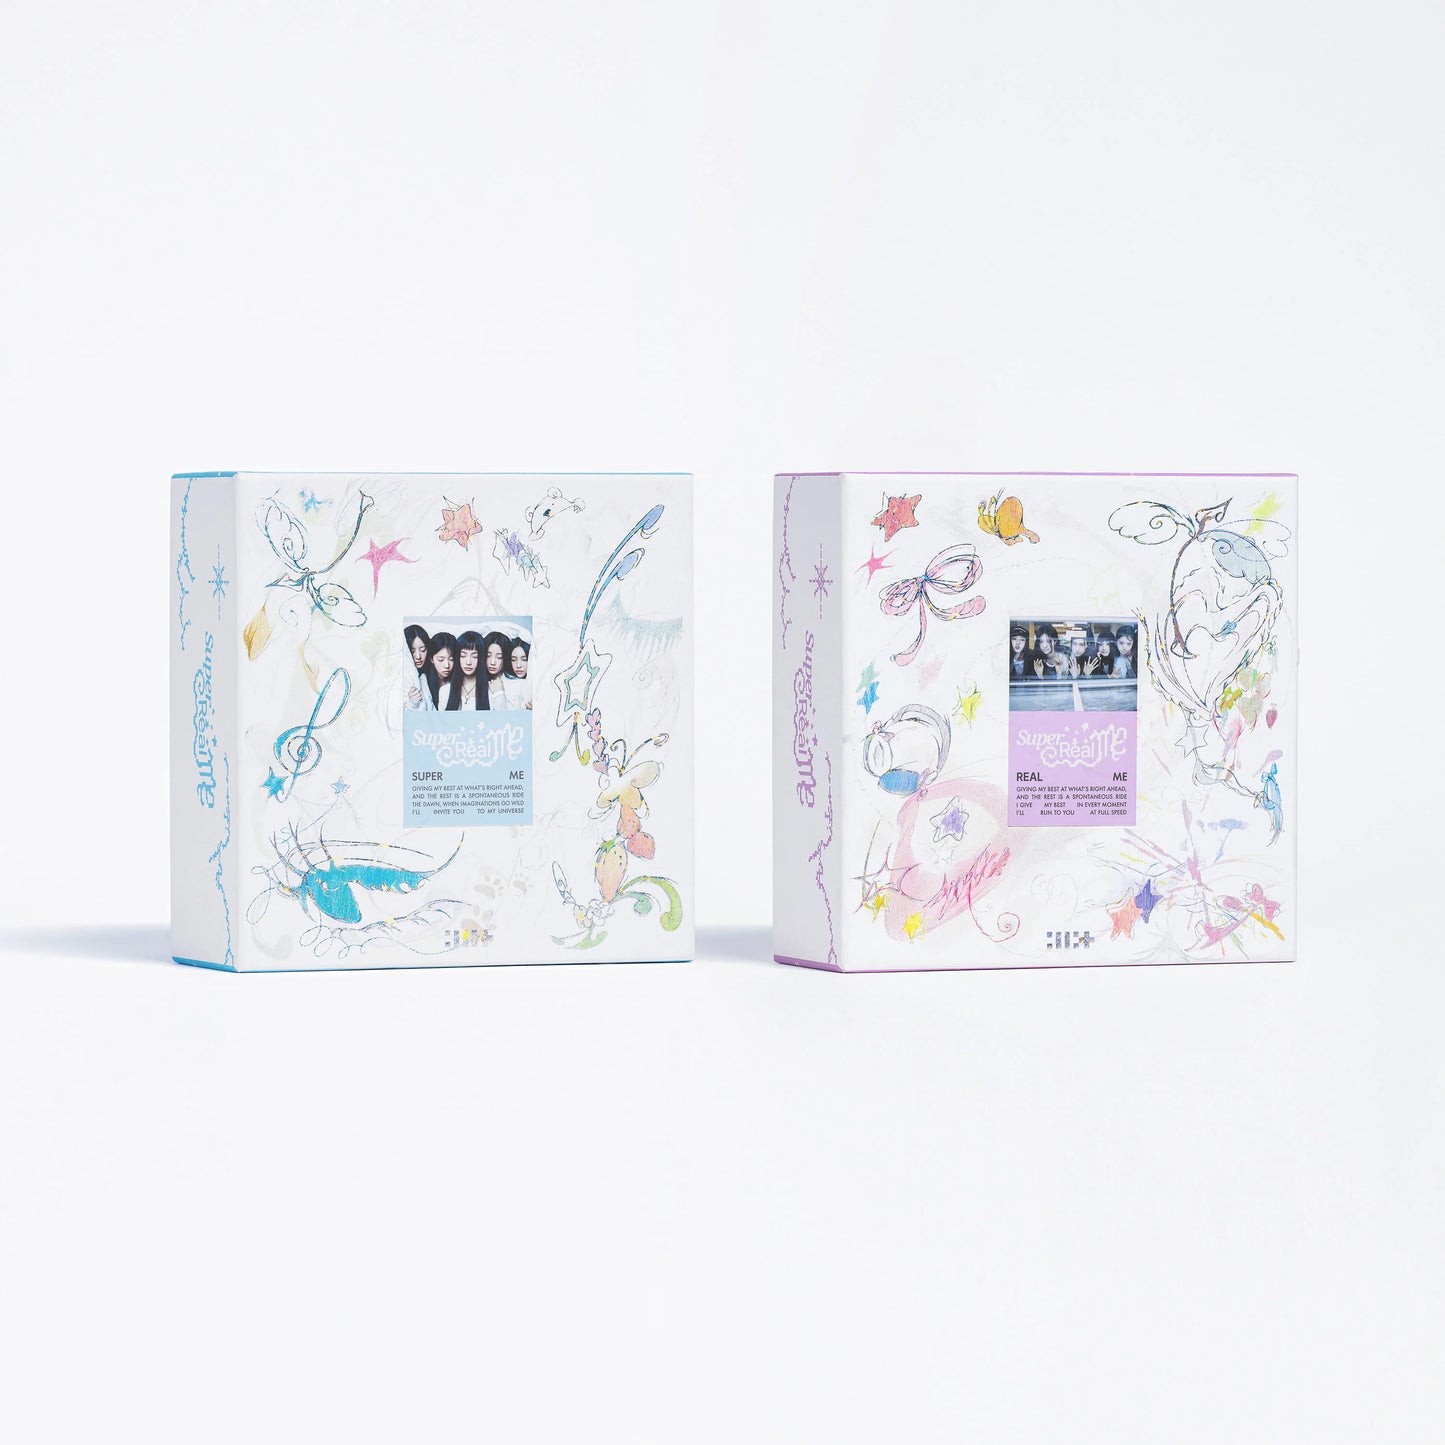 ILLIT 1st Mini Album "SUPER REAL ME" Album (random)